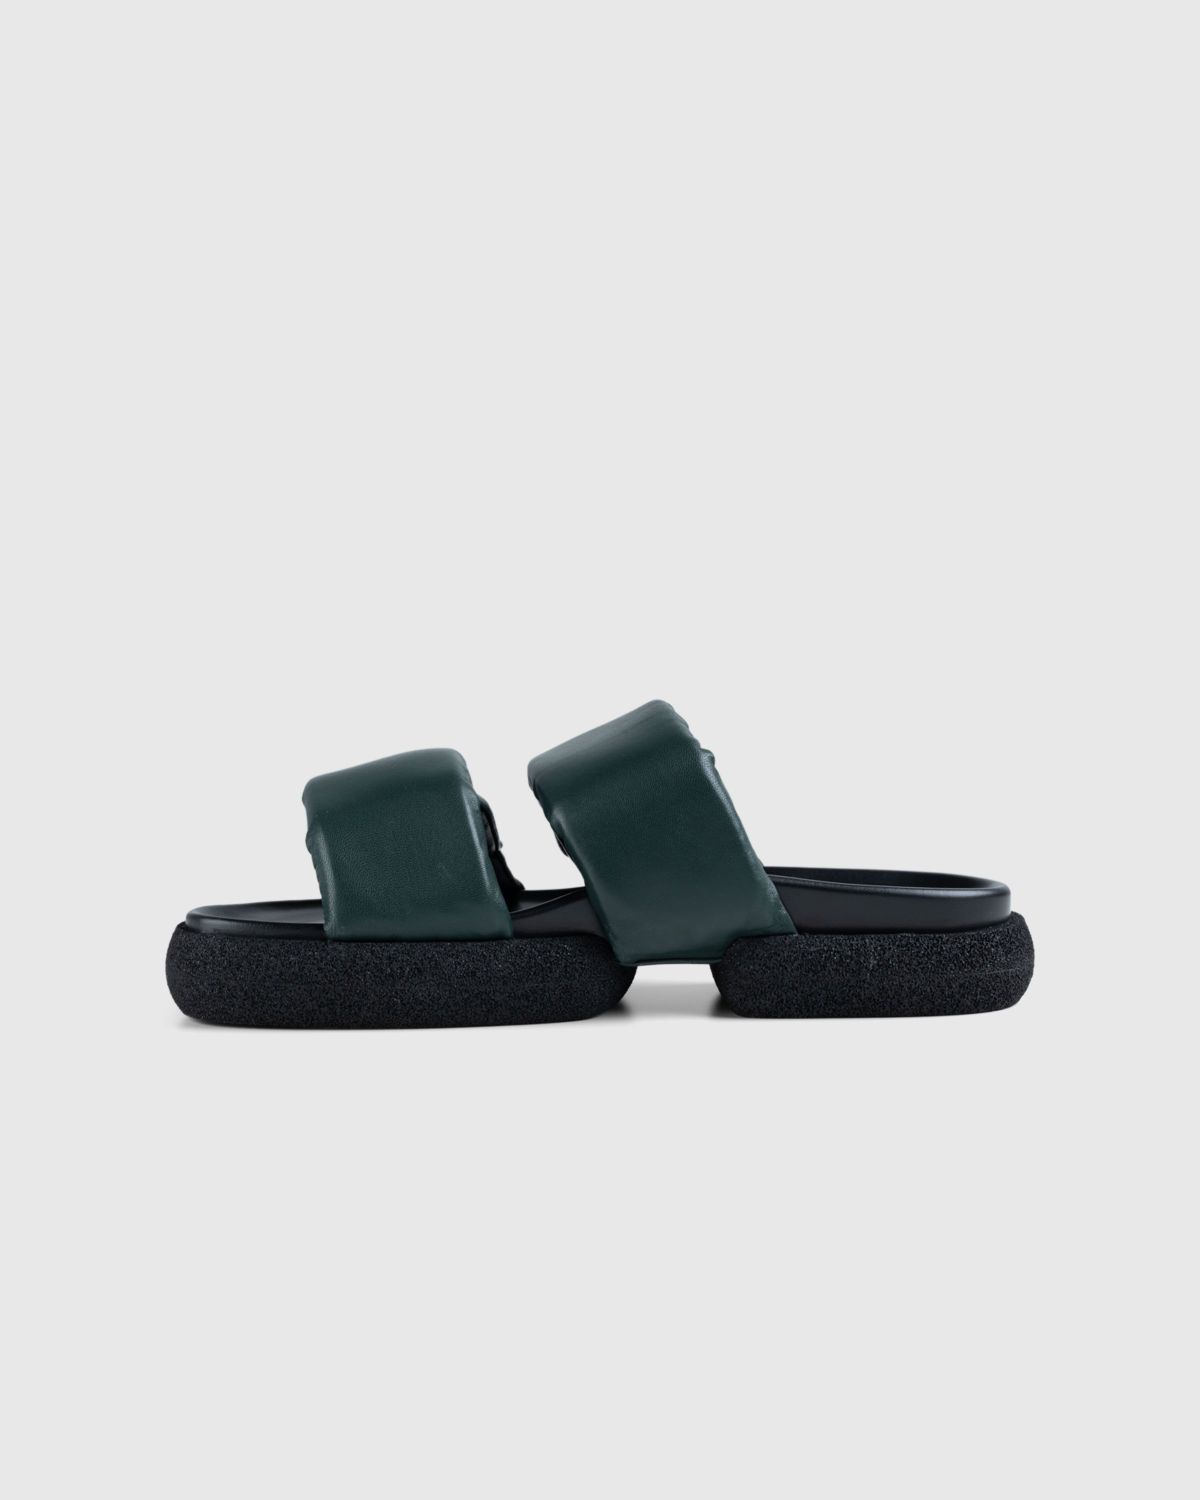 Dries van Noten – Leather Platform Sandals Green - Sandals - Green - Image 2